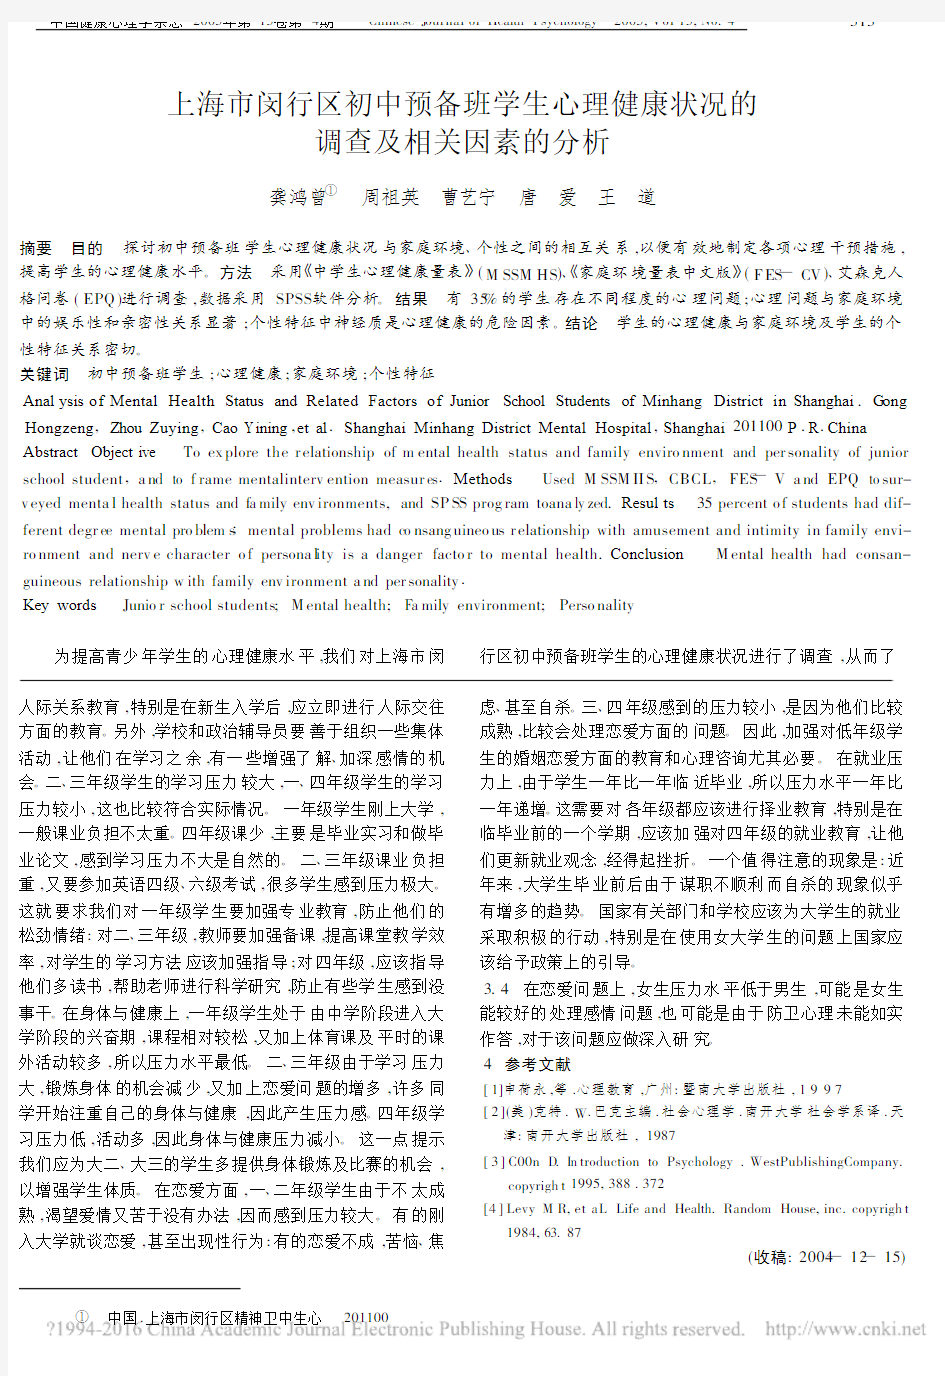 上海市闵行区初中预备班学生心理健康状况的调查及相关因素的分析_龚鸿曾[1]